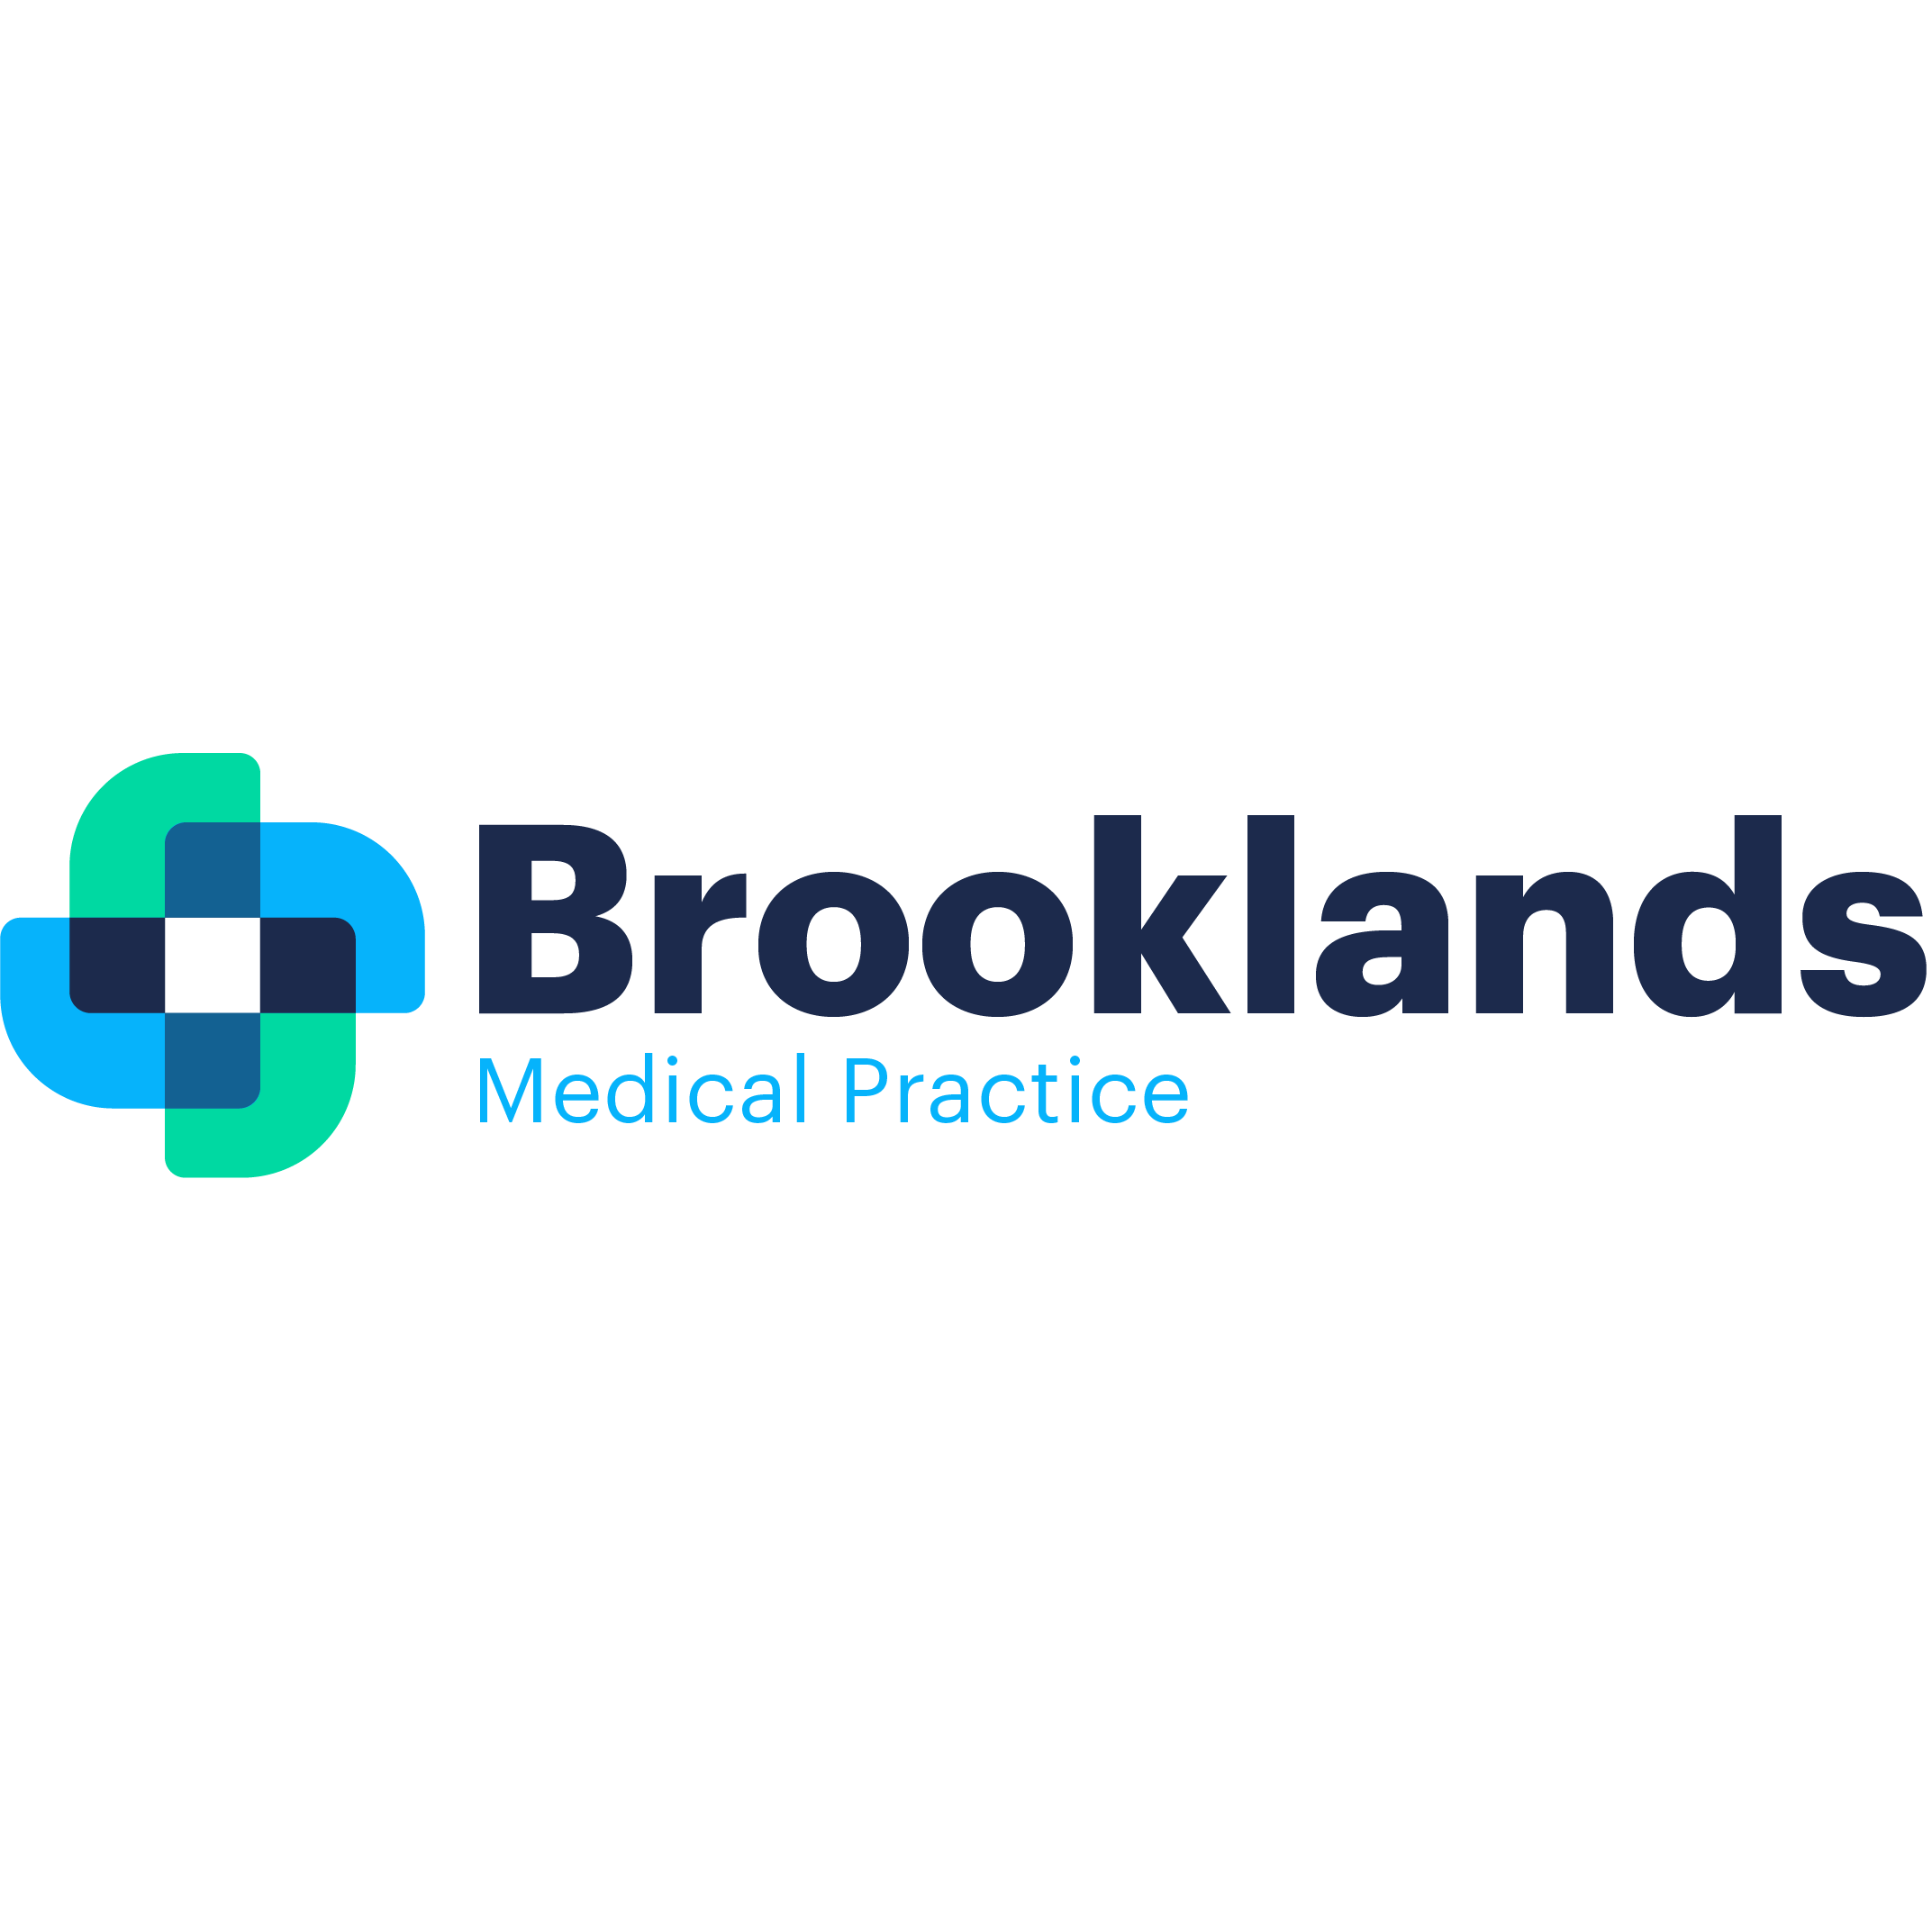 Brooklands Medical